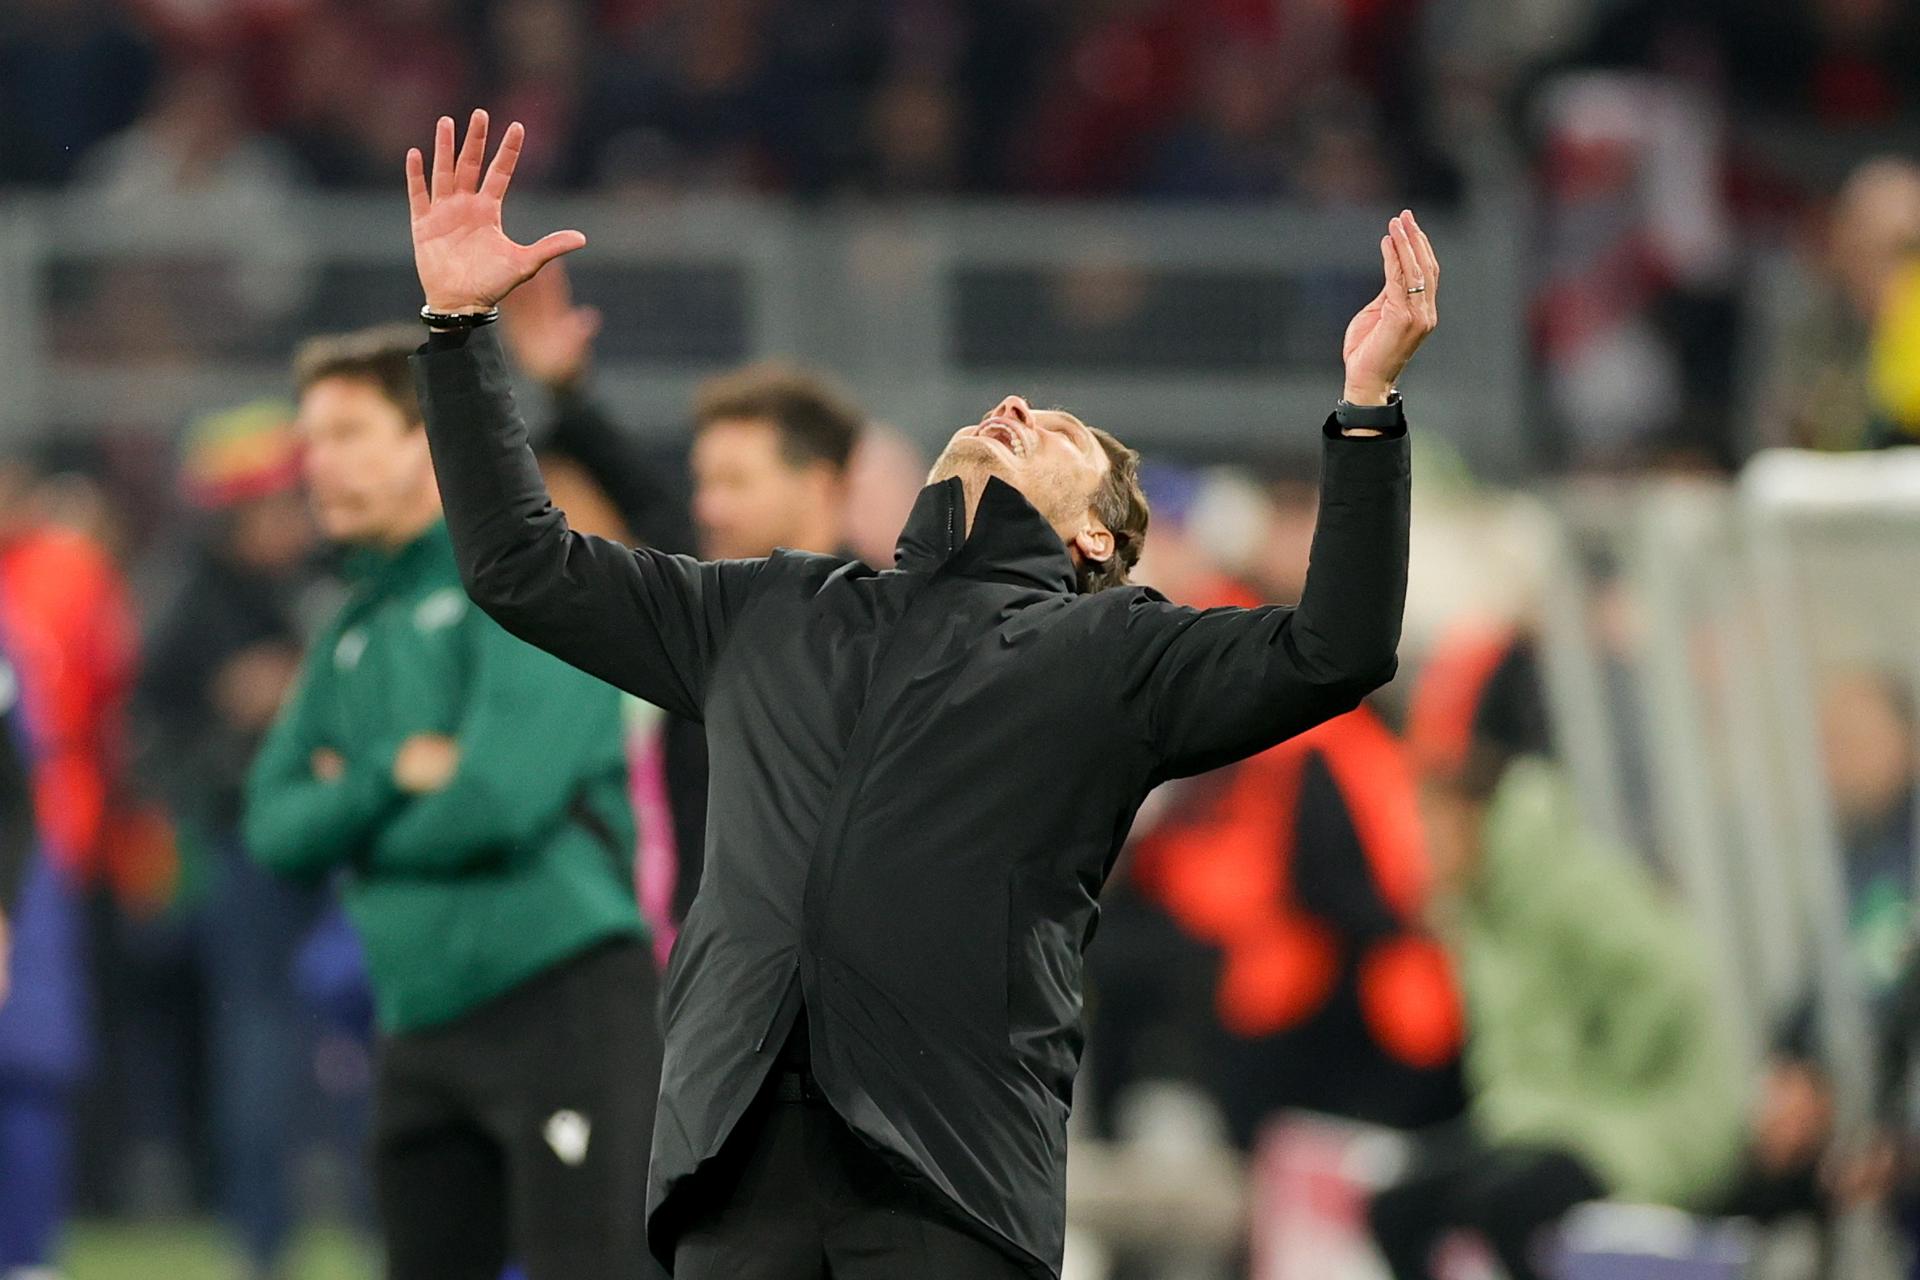 De torcedor a técnico: Terzic busca glória com Dortmund na Champions